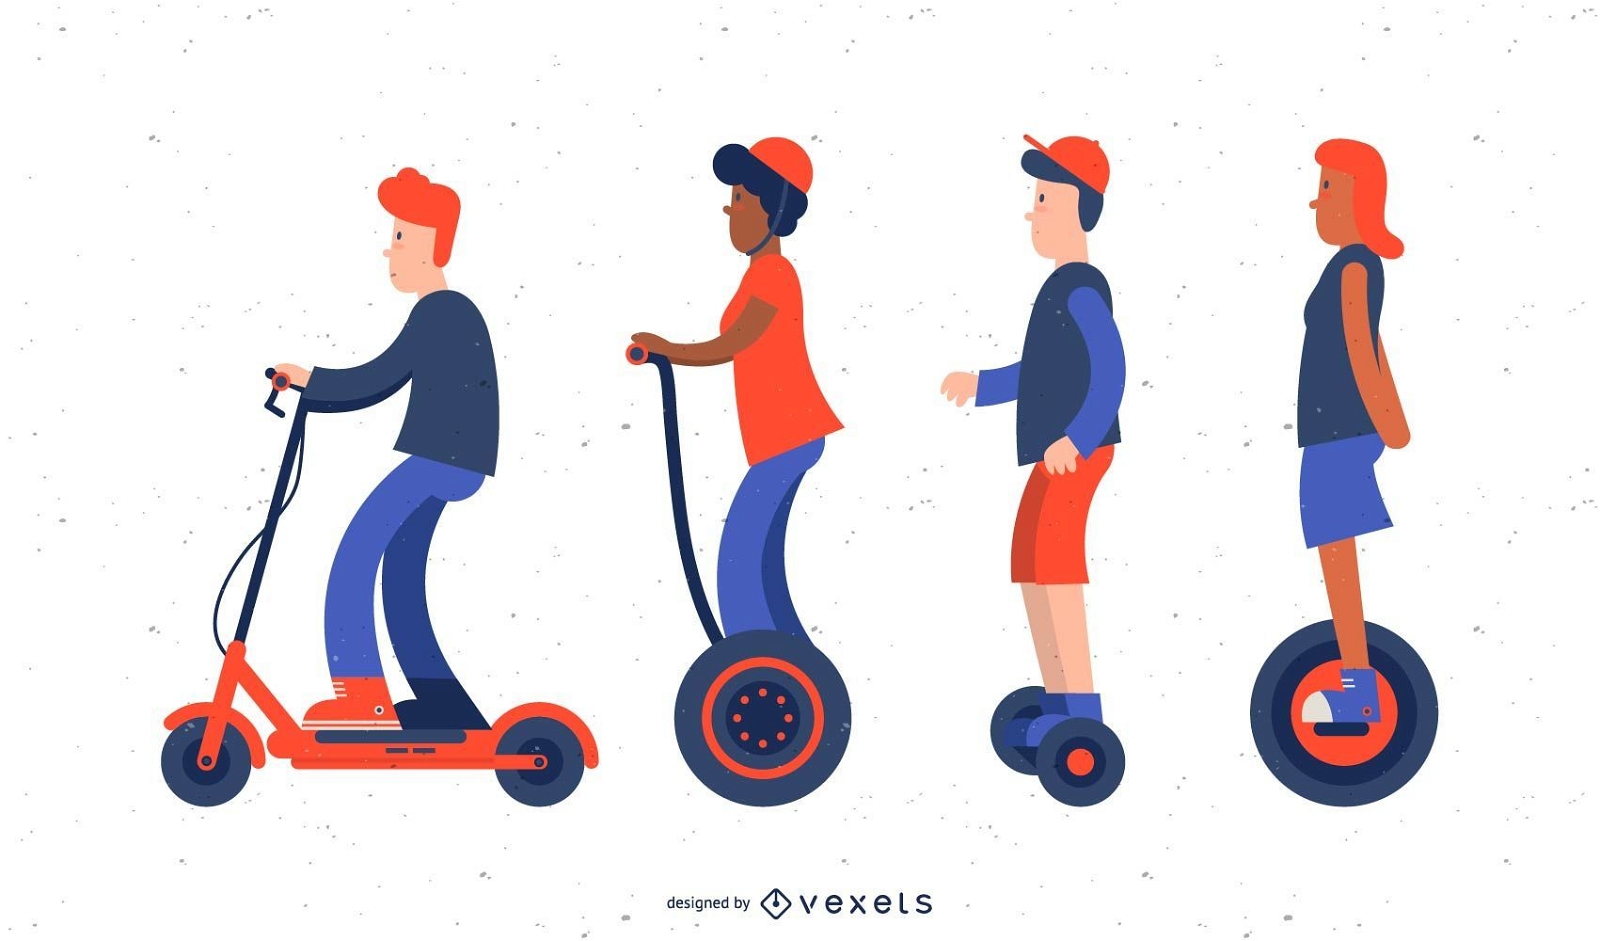 Scooter illustration set